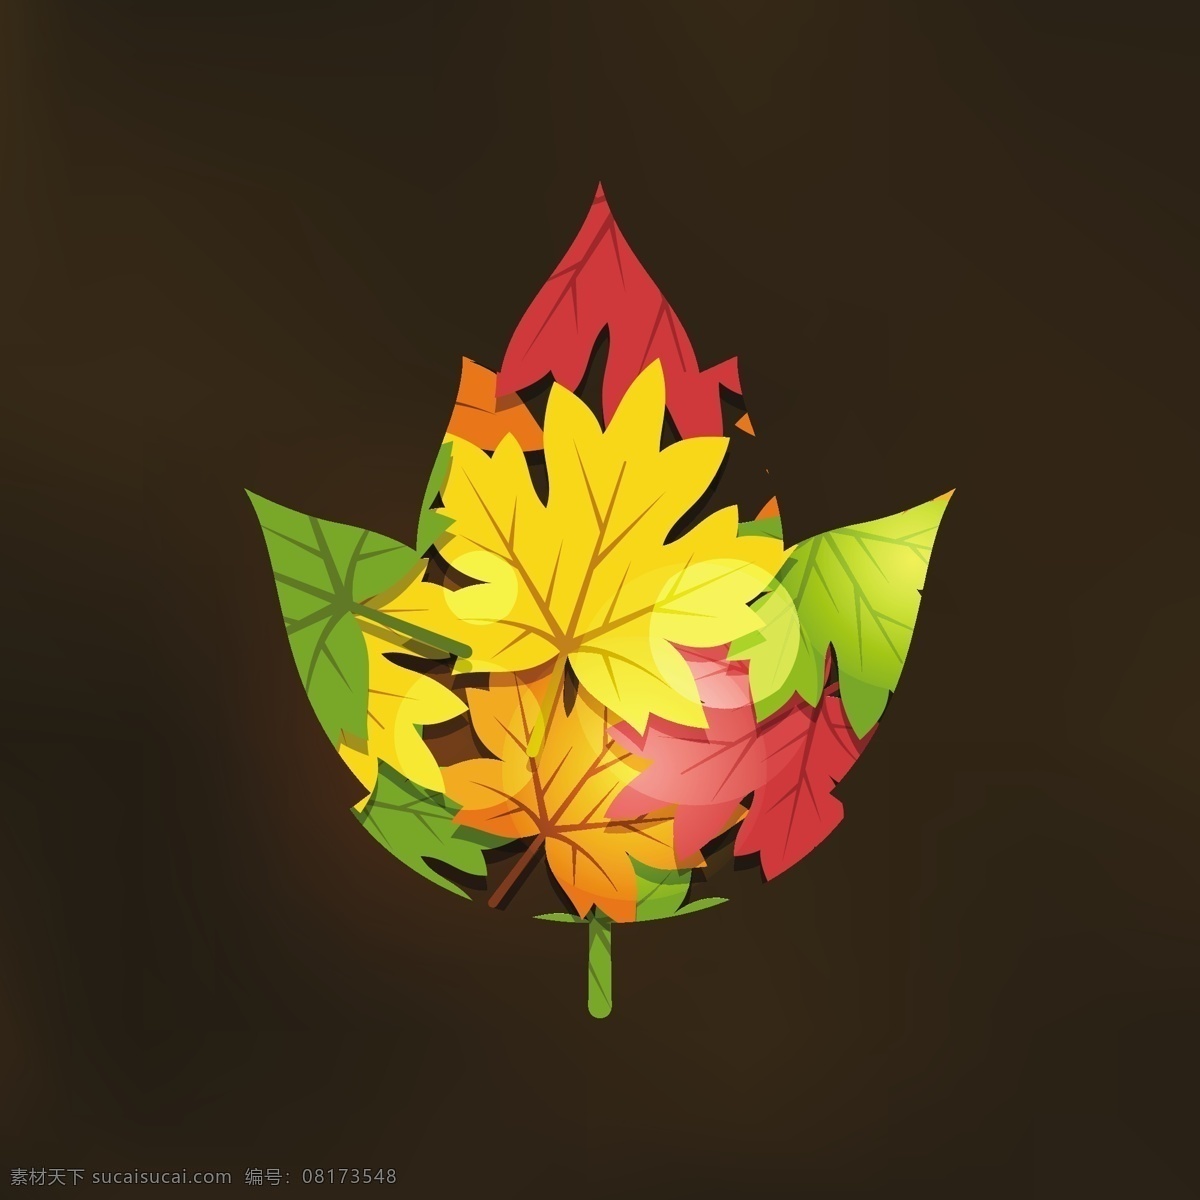 平面 式 双 曝光 秋季 插画 背景 旗帜 图案 抽象背景 树 花 抽象 卡片 模板 树叶 自然 花卉背景 花卉图案 旗帜背景 秋天 艺术 颜色 植物